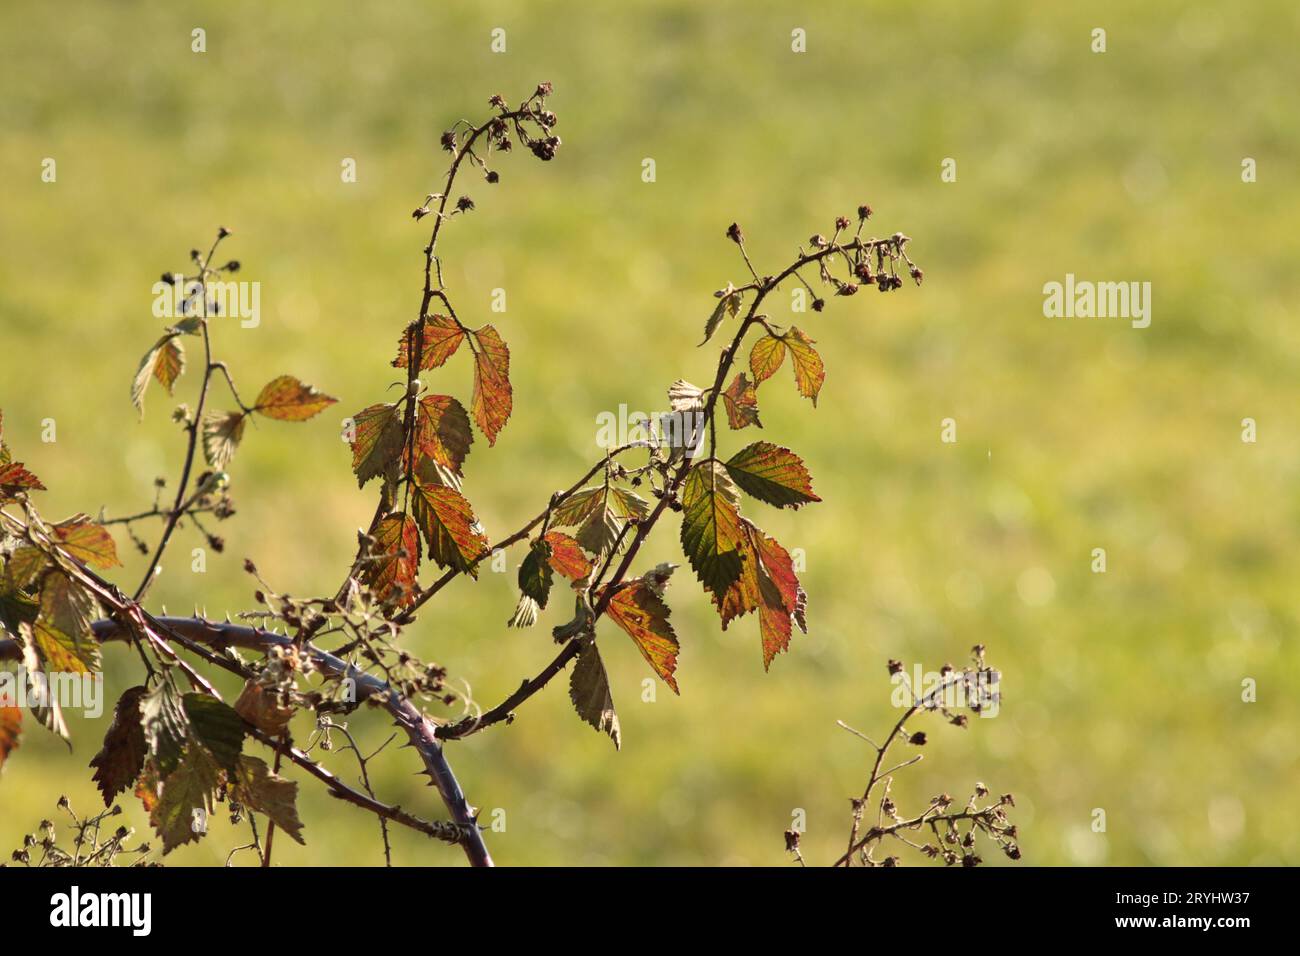 Ein Bramble der Gattung Rubus, mit seinen gefallenen Blütenblättern und seinen bunten Blättern, die die Farben des Herbstes aka Fall annehmen. Stockfoto